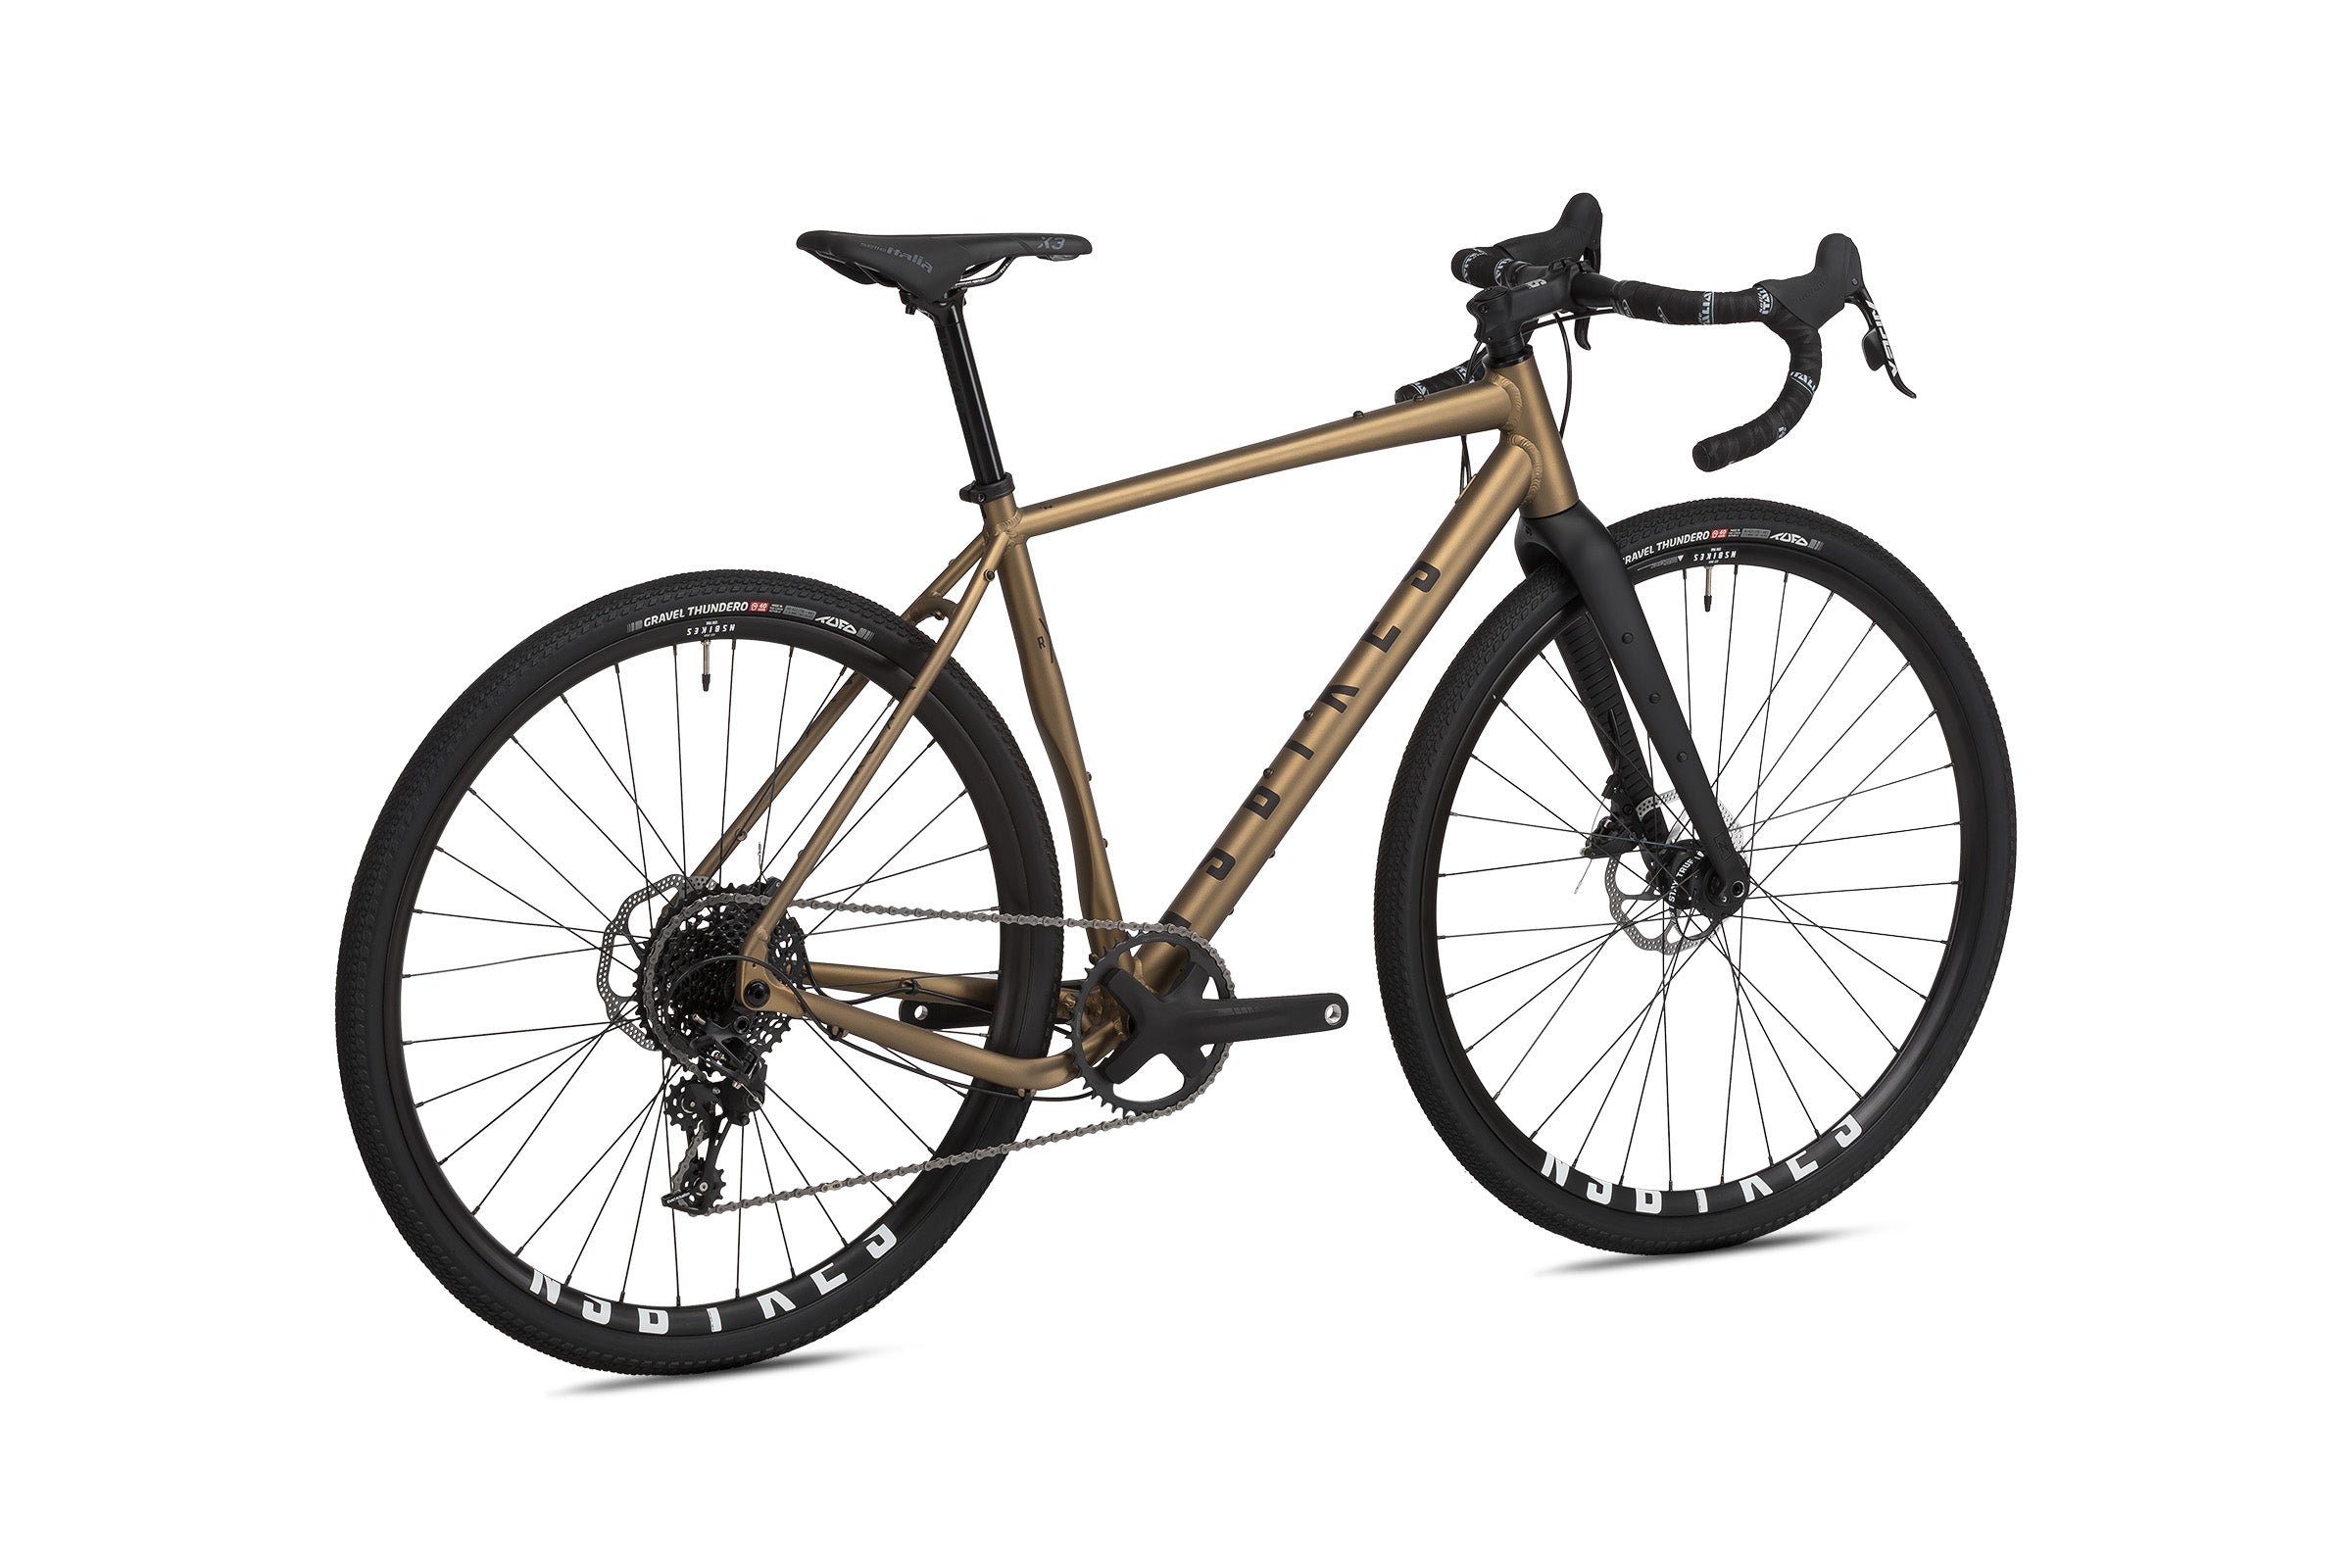 NS Bikes RAG+ 2 Road & Gravel Plus 700C olive Rust - Premium Bikeshop